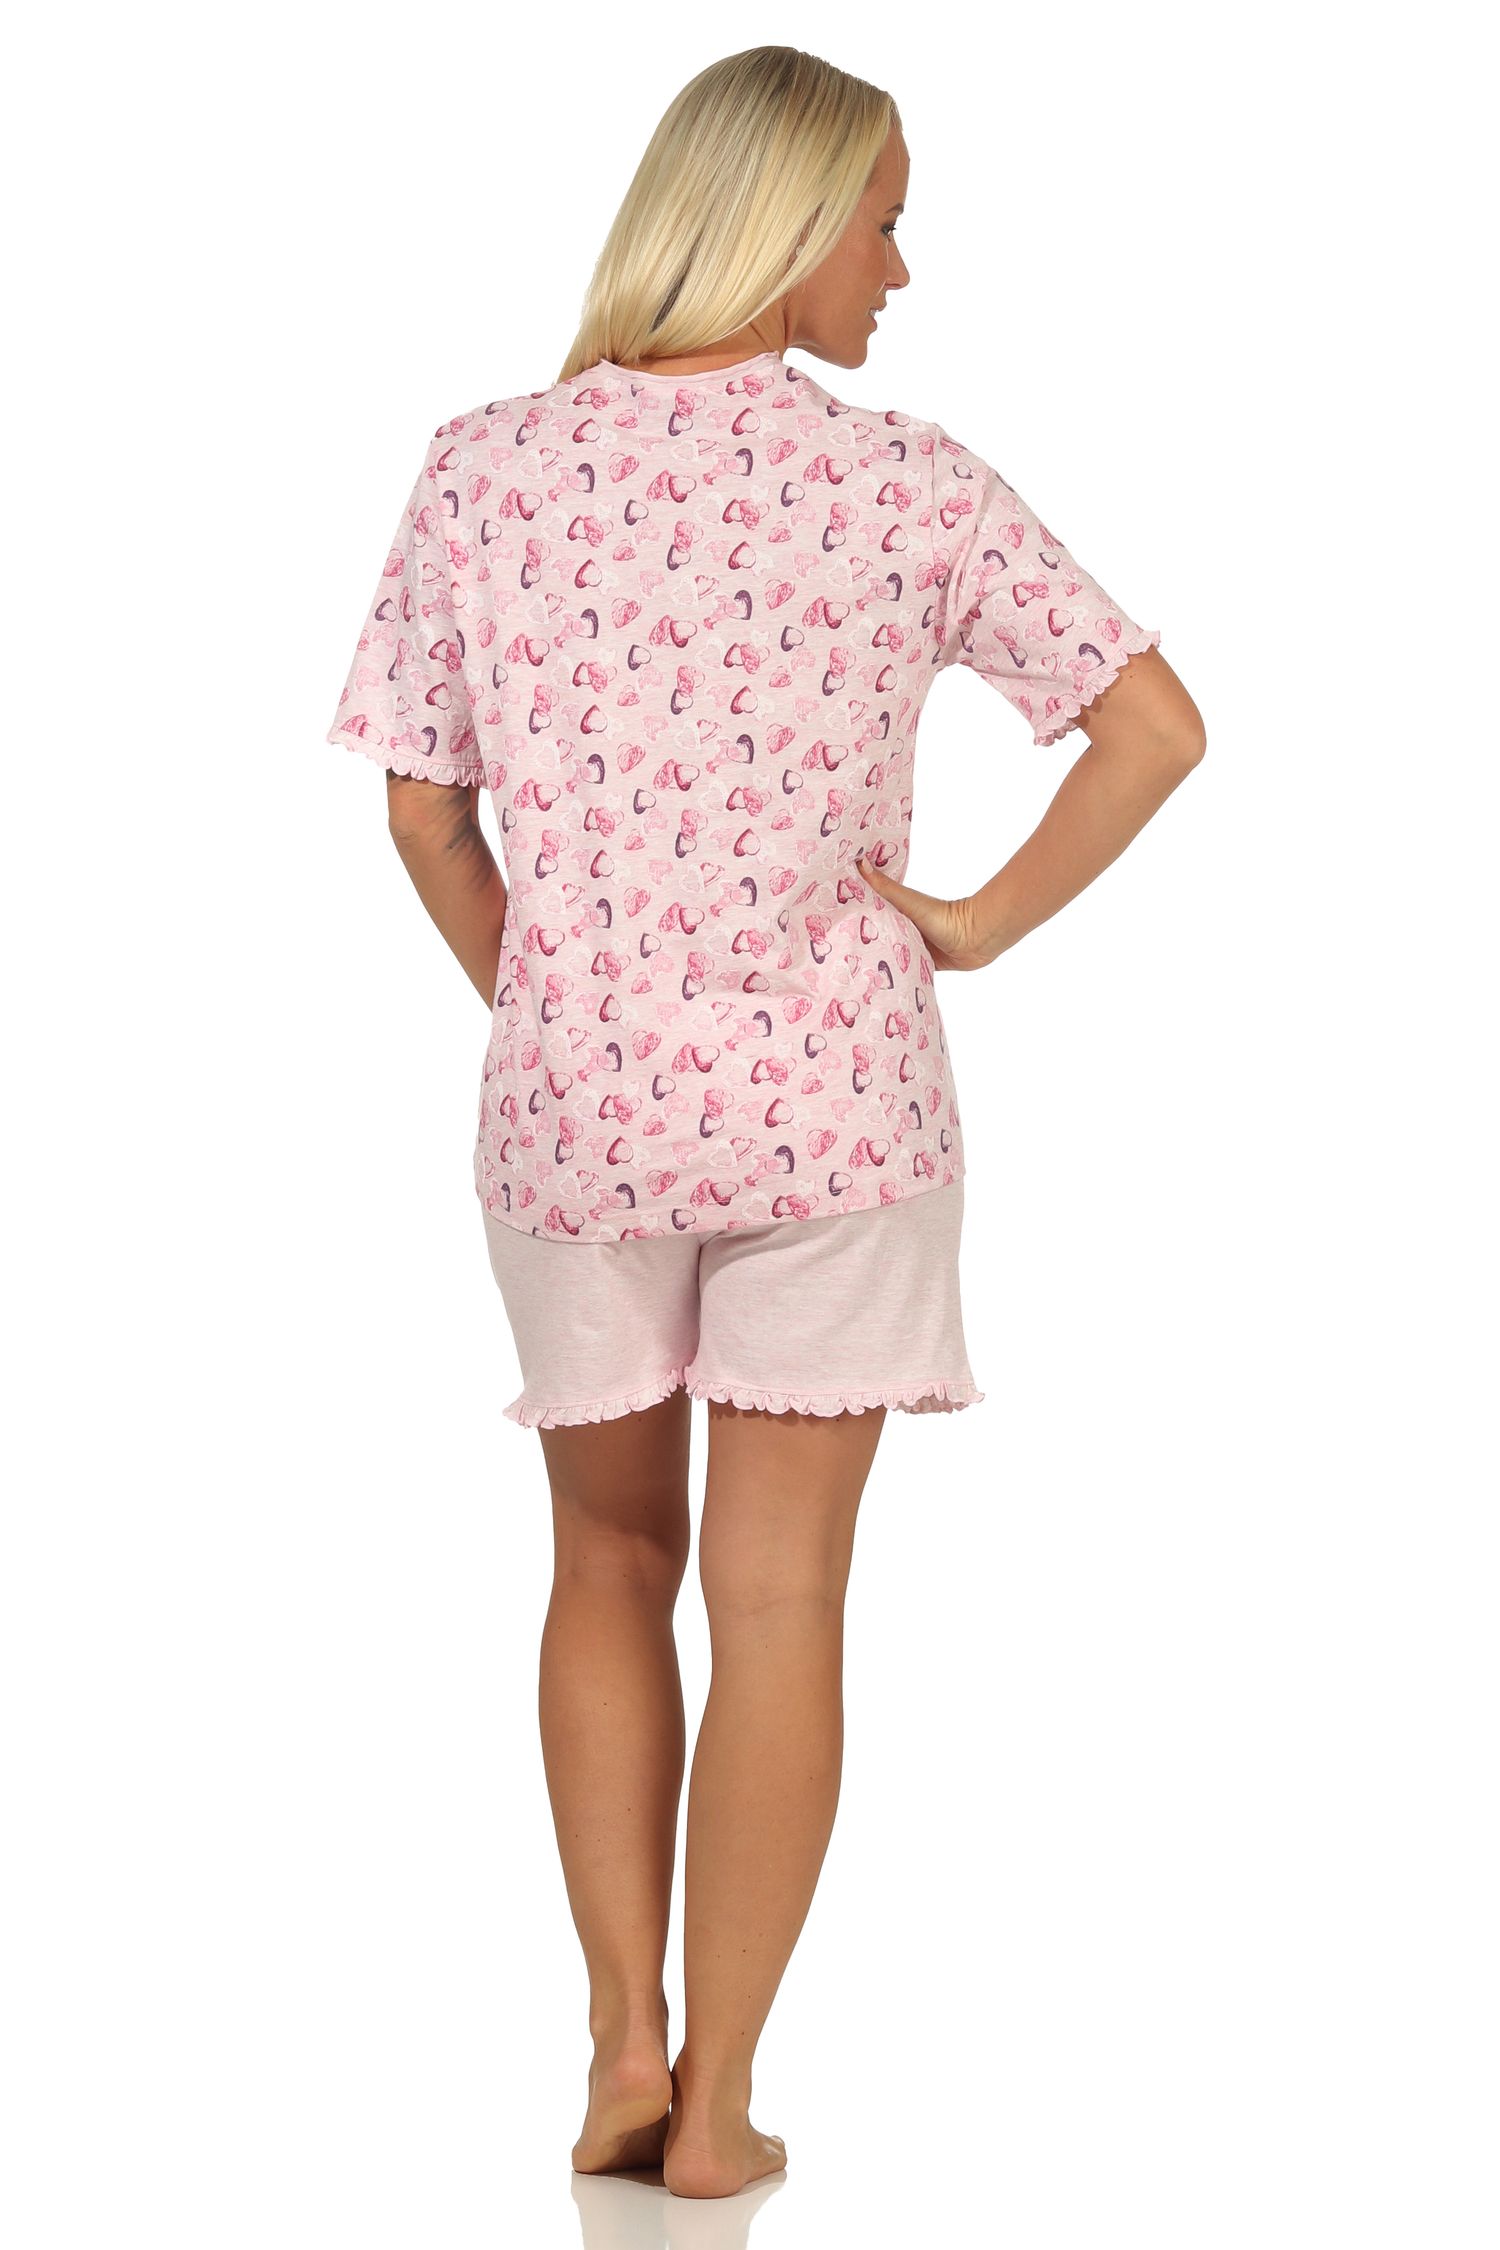 Damen Shorty Pyjama kurzarm mit Herzen als Motiv in Melange-Optik - auch in Übergrössen